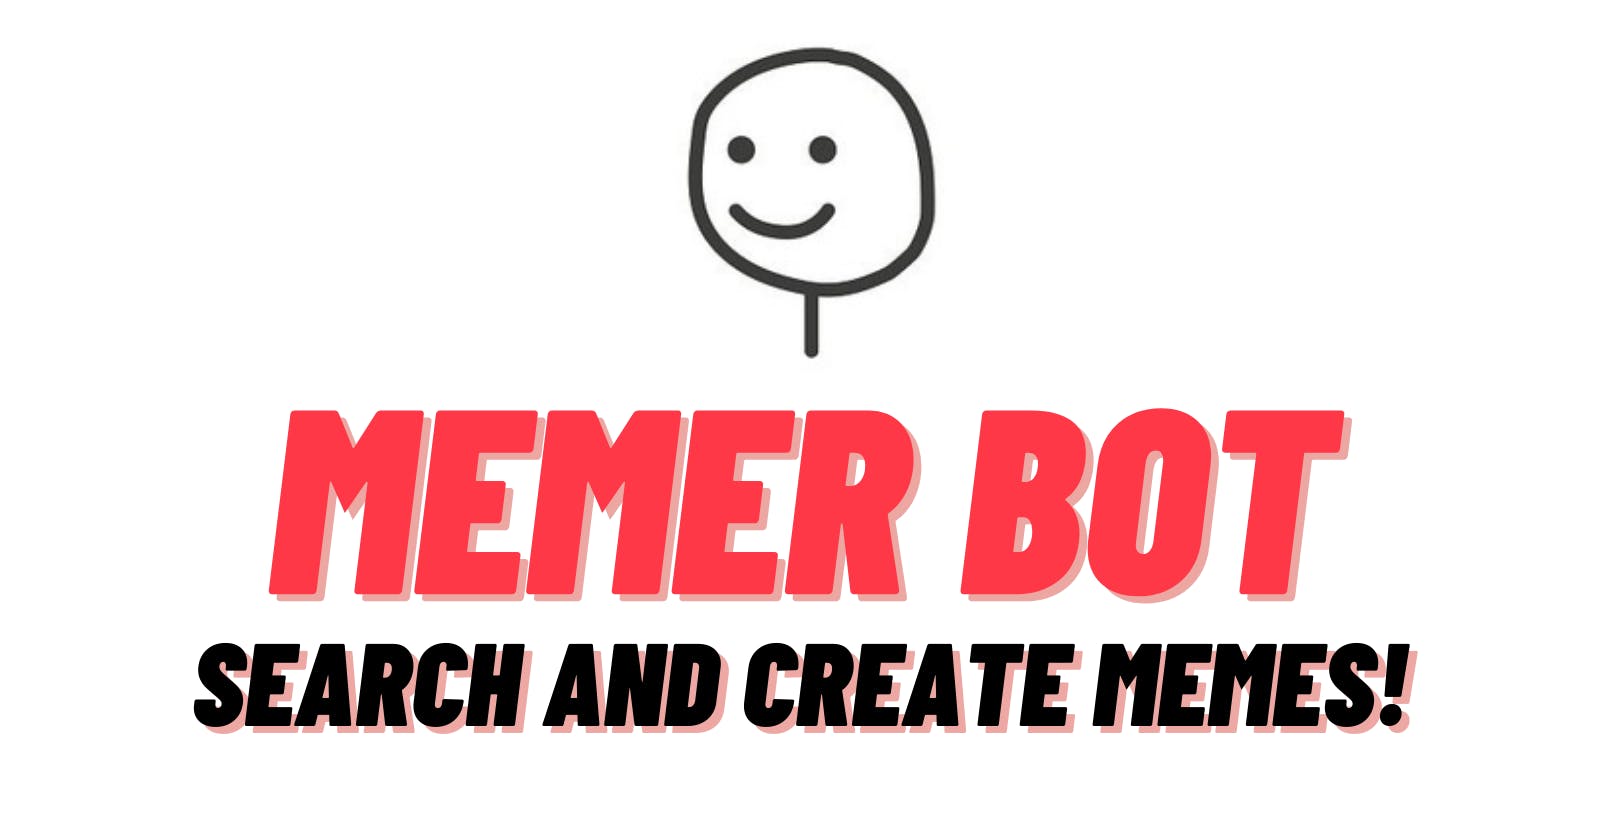 Memer Bot - All in one Telegram Bot for your Meme-ing needs!